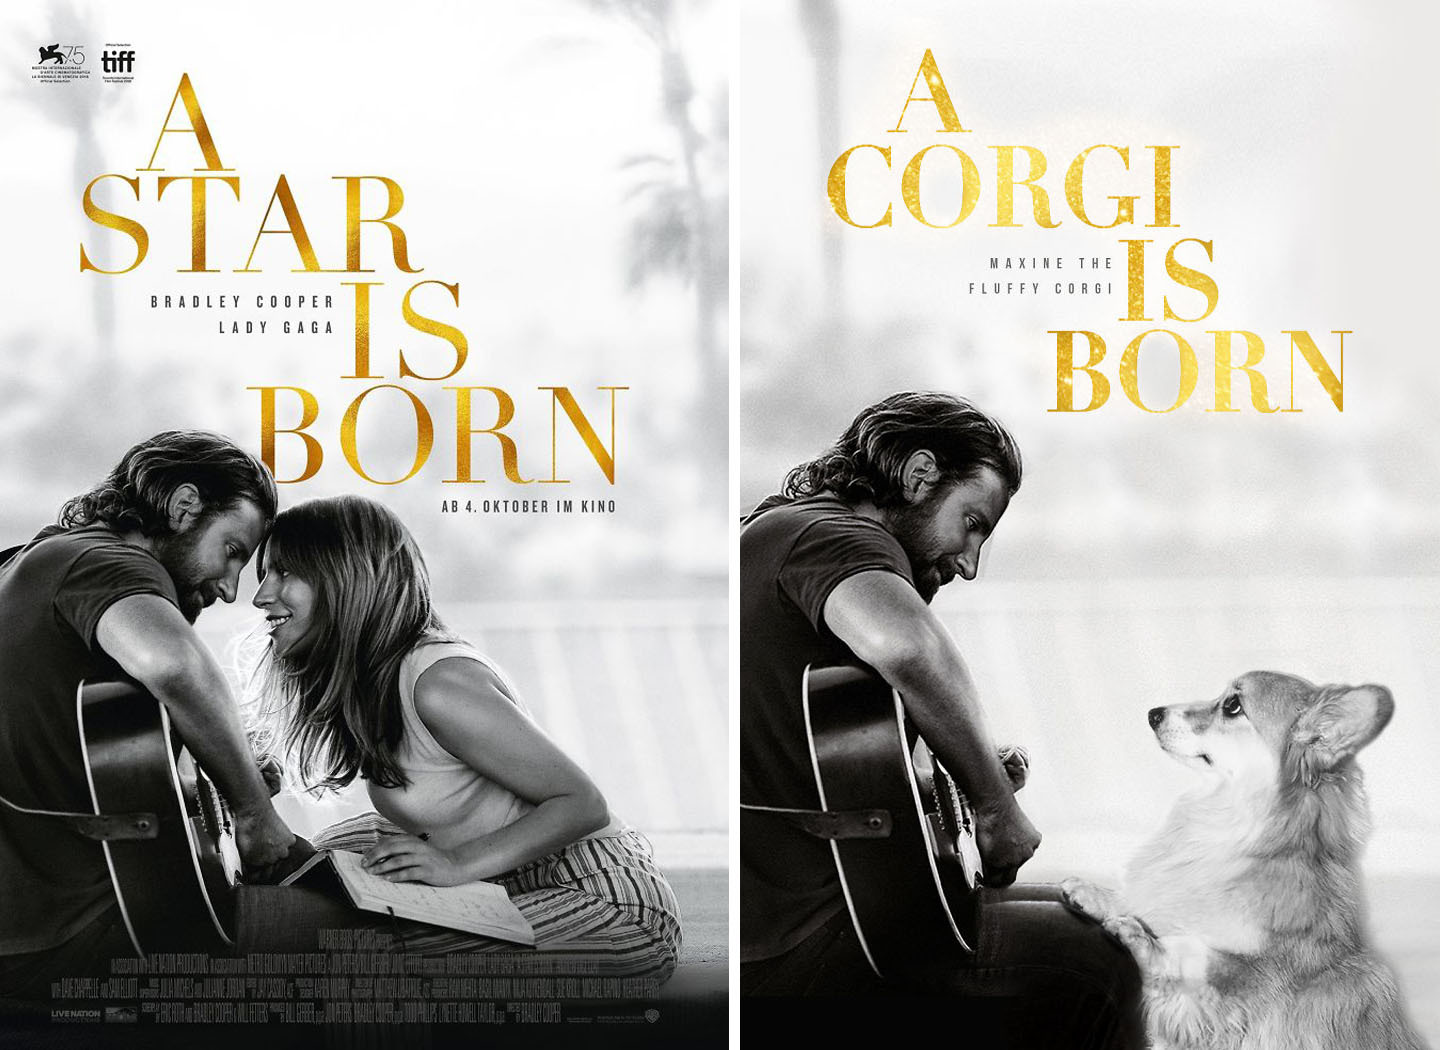 A Star Is Born - A Corgi Is Born